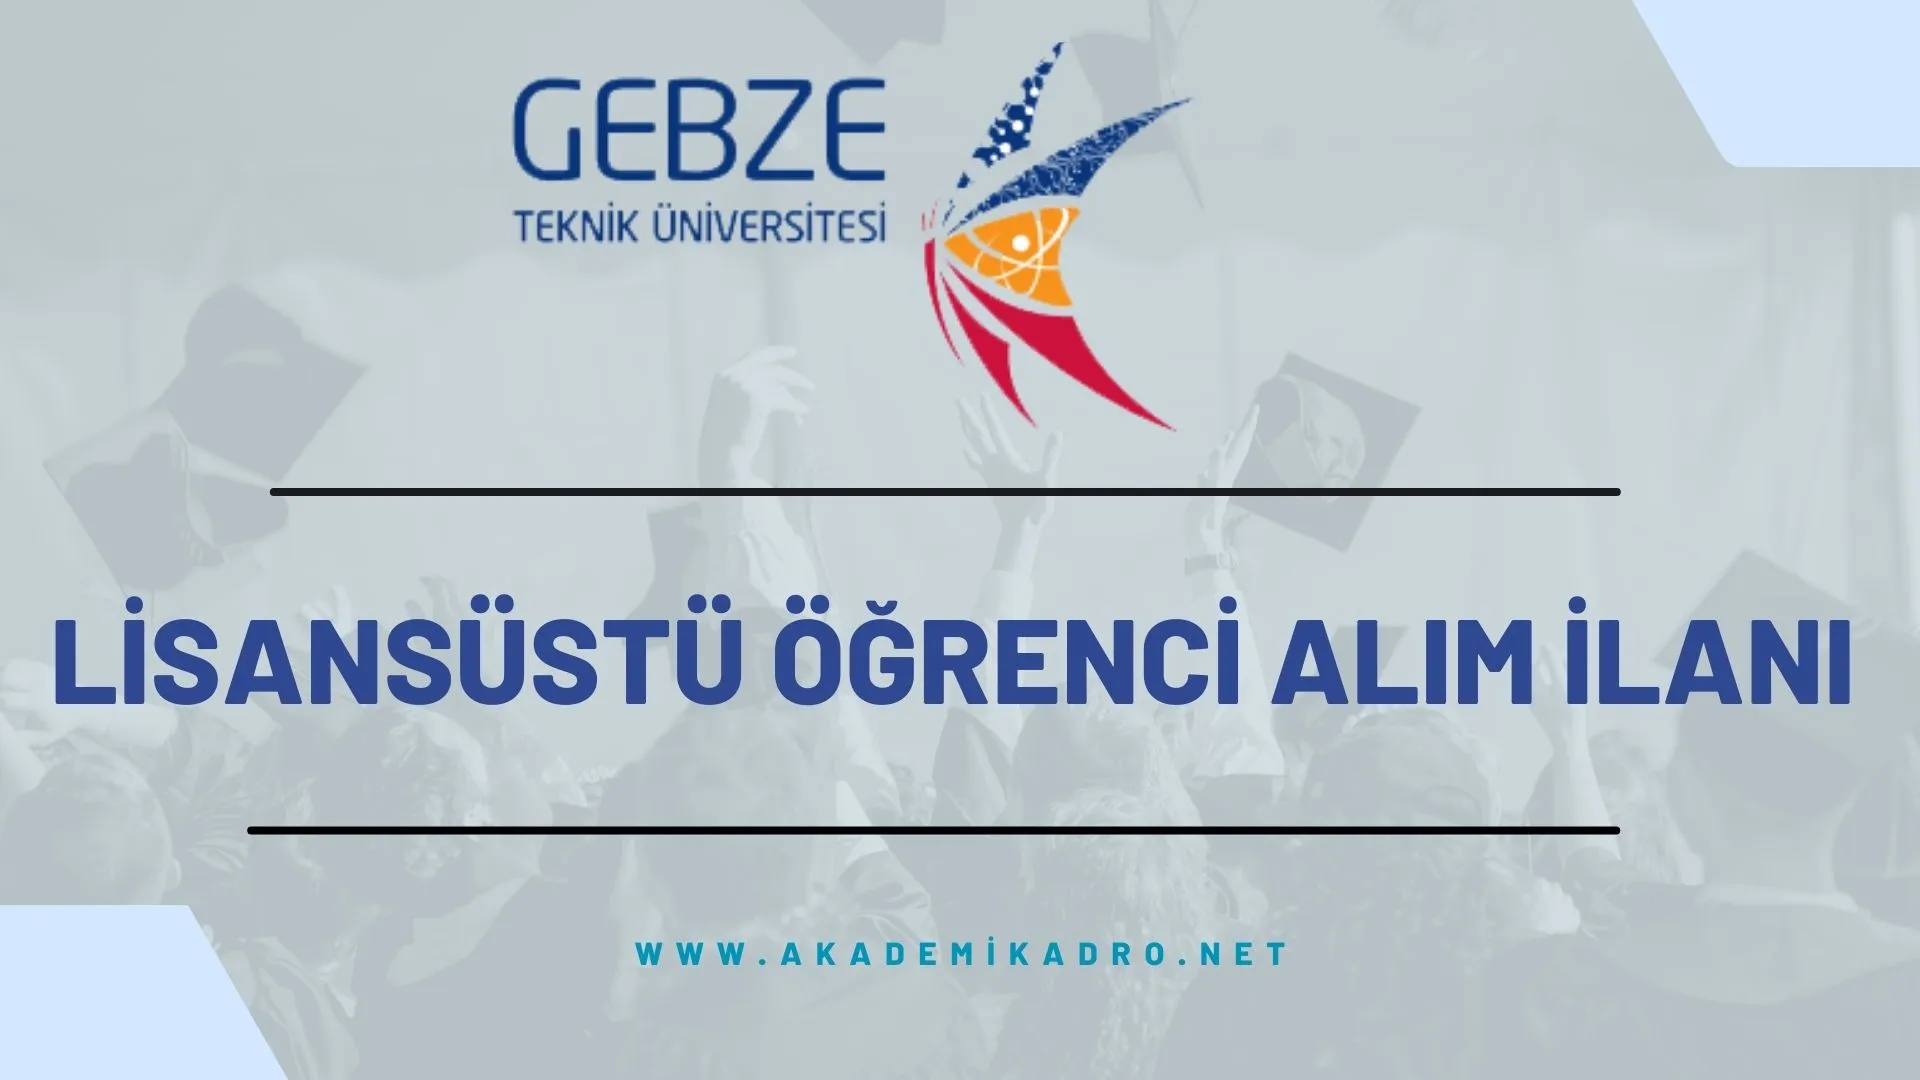 Gebze Teknik Üniversitesi 2023-2024 bahar döneminde lisansüstü programlara öğrenci alacaktır.